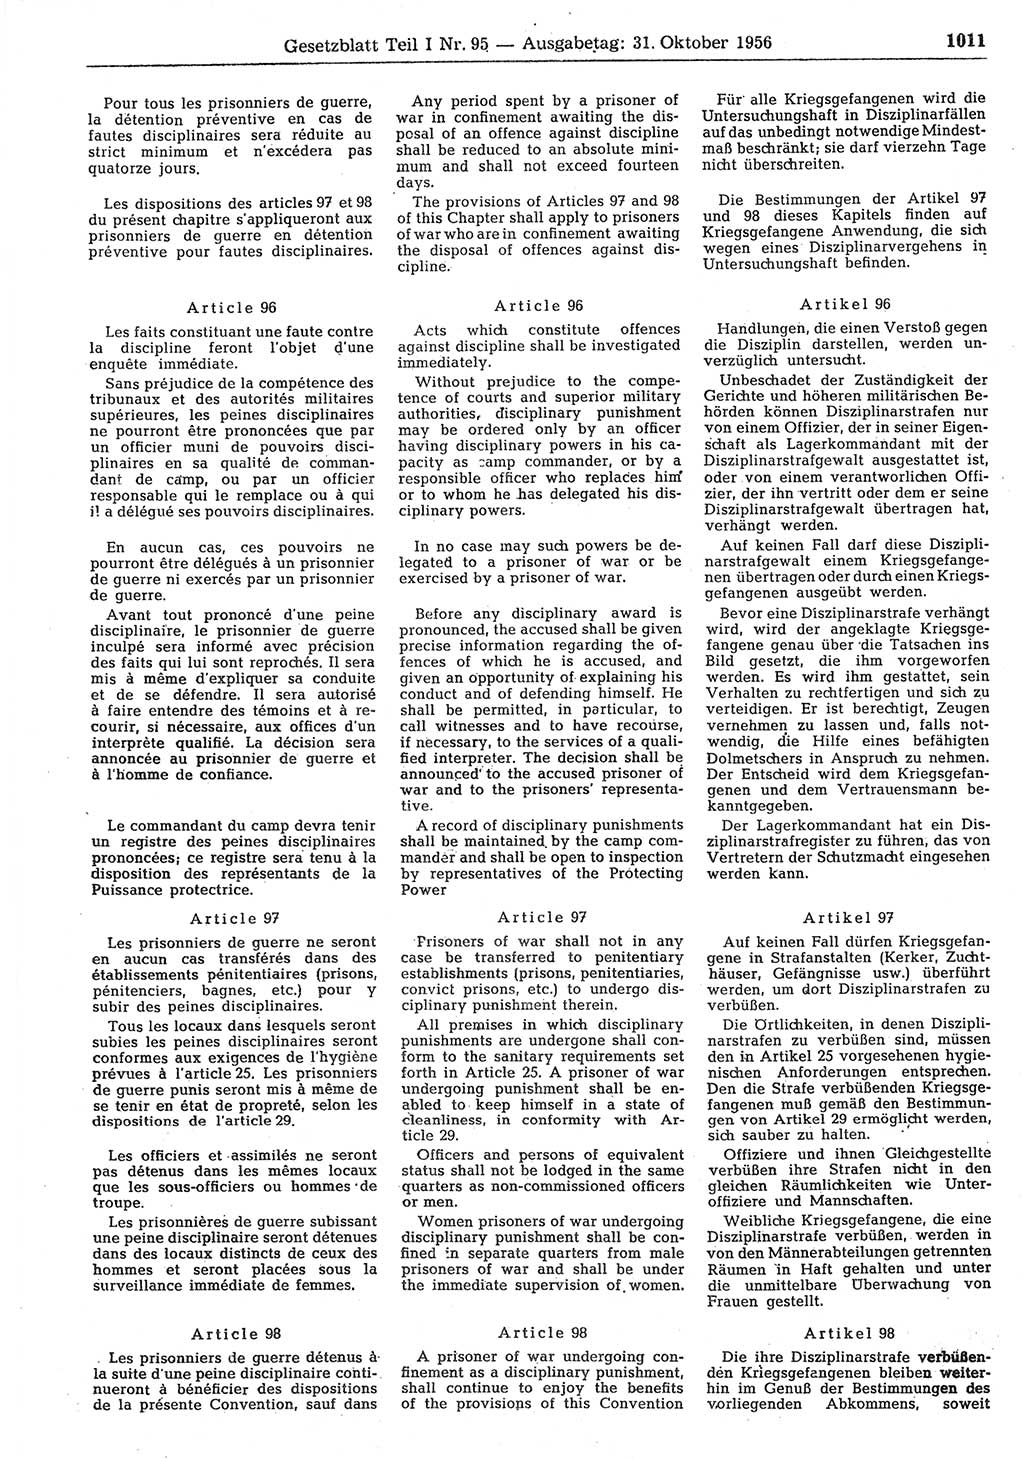 Gesetzblatt (GBl.) der Deutschen Demokratischen Republik (DDR) Teil Ⅰ 1956, Seite 1011 (GBl. DDR Ⅰ 1956, S. 1011)